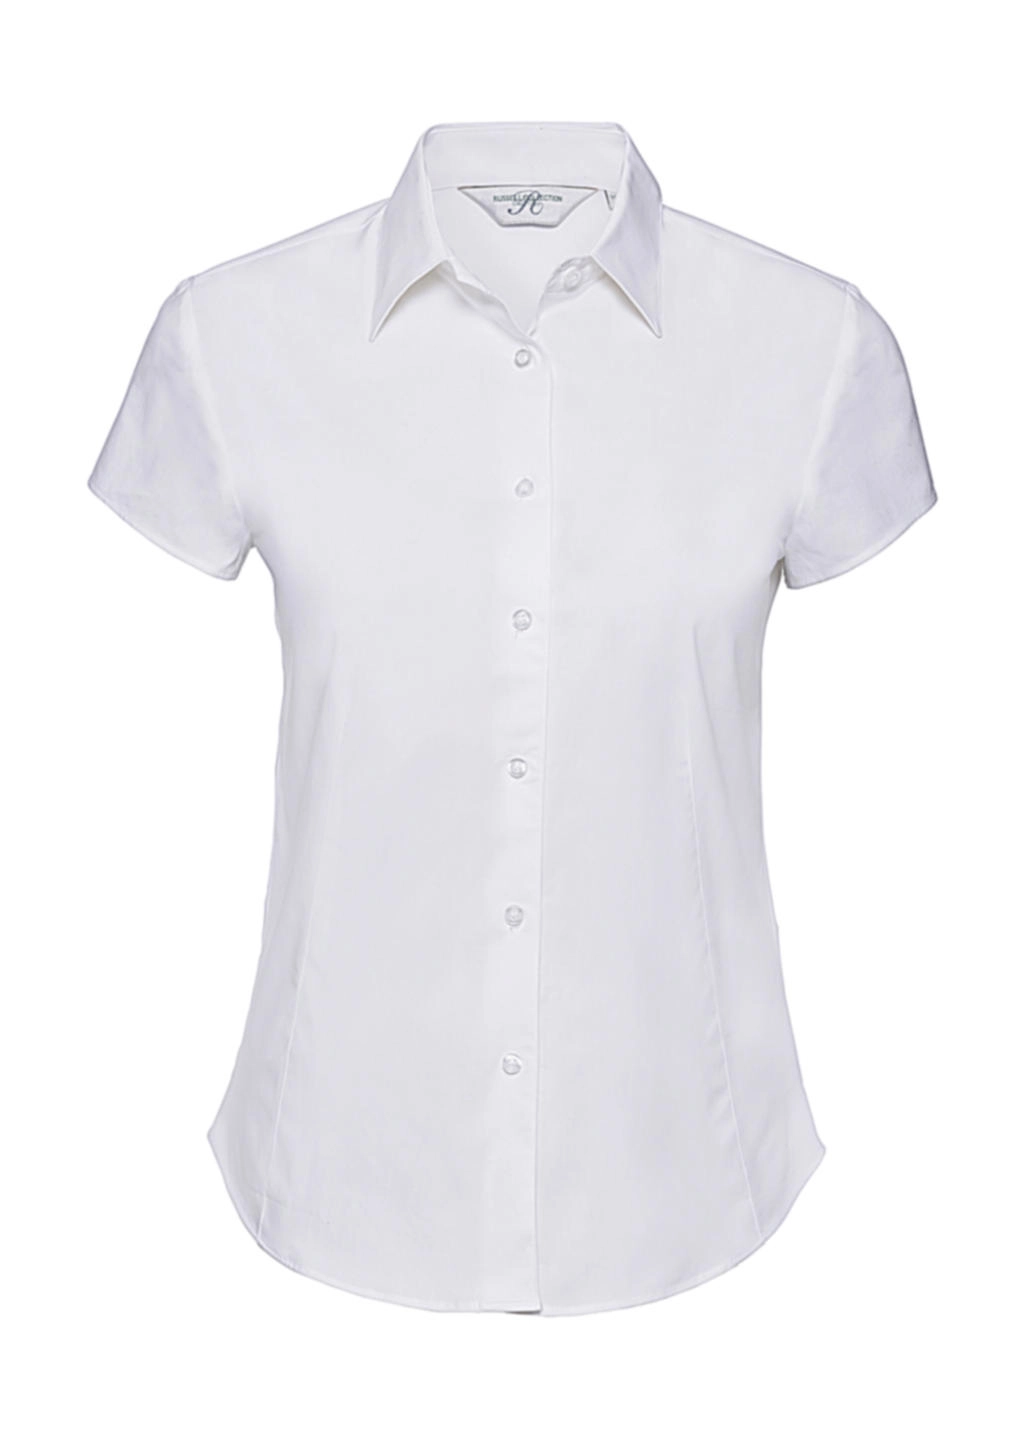 Ladies` Easy Care Fitted Shirt zum Besticken und Bedrucken in der Farbe White mit Ihren Logo, Schriftzug oder Motiv.